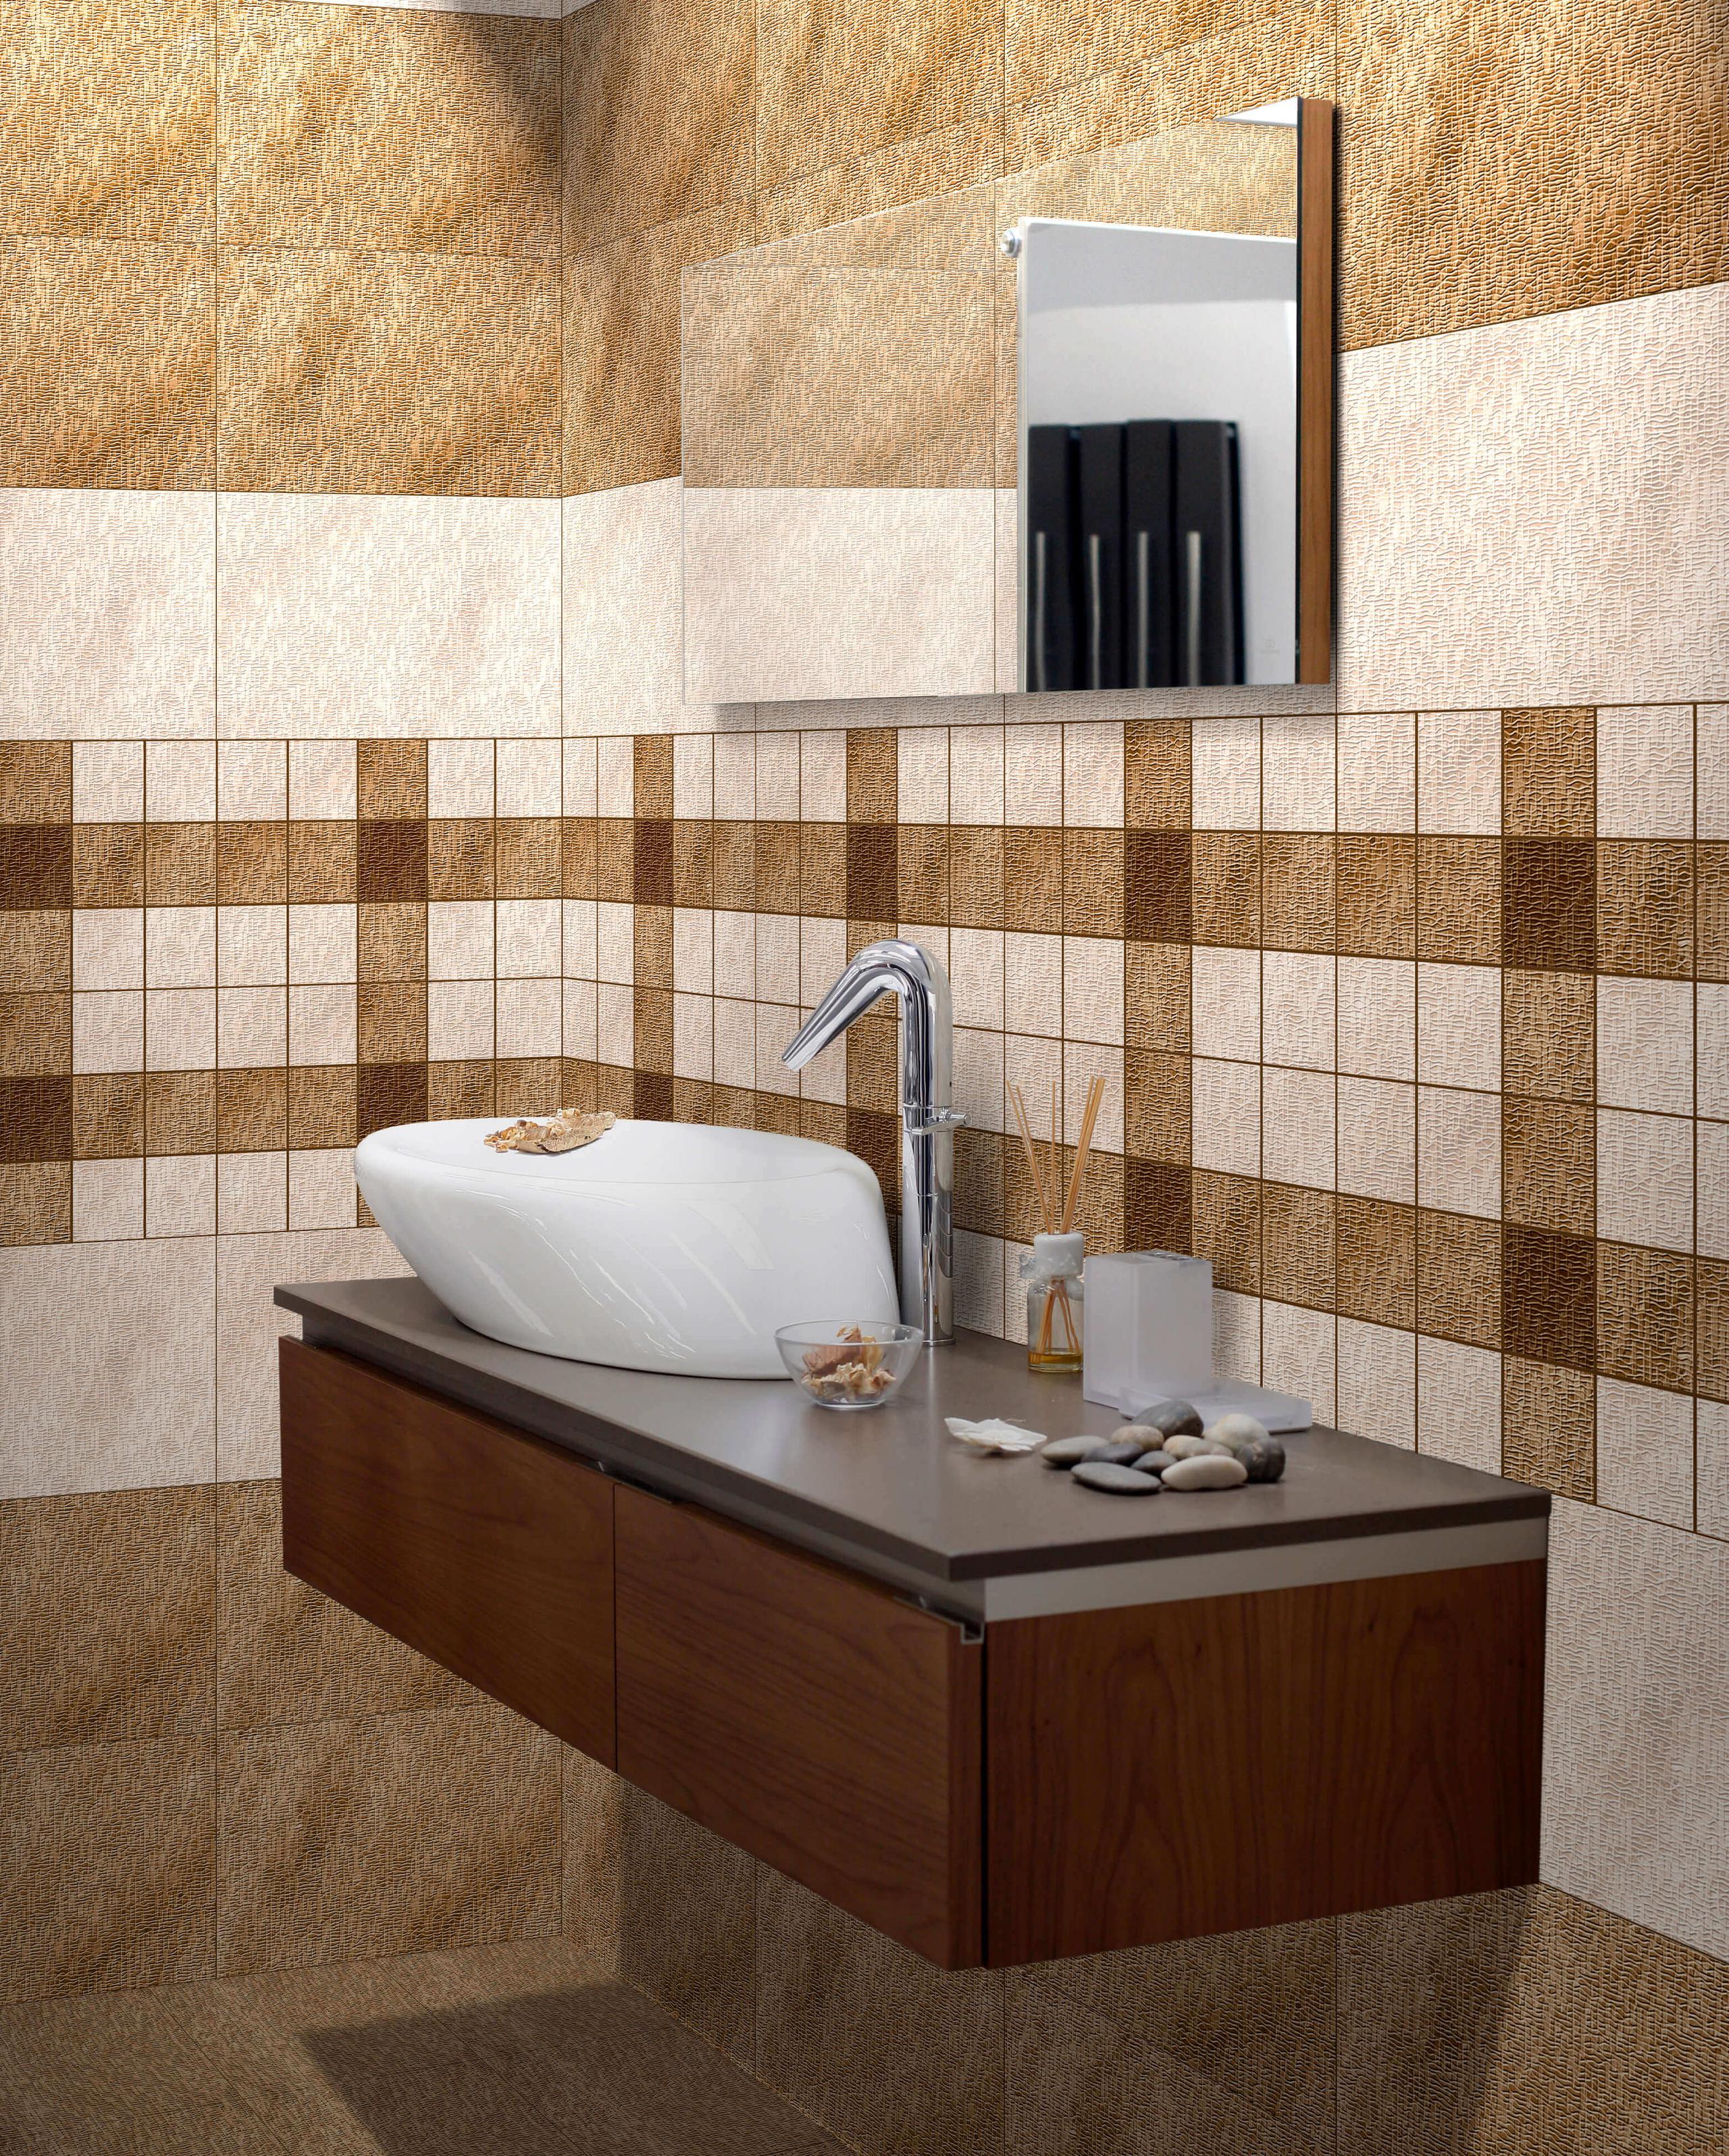 All Tiles for Bathroom Tiles, Kitchen Tiles